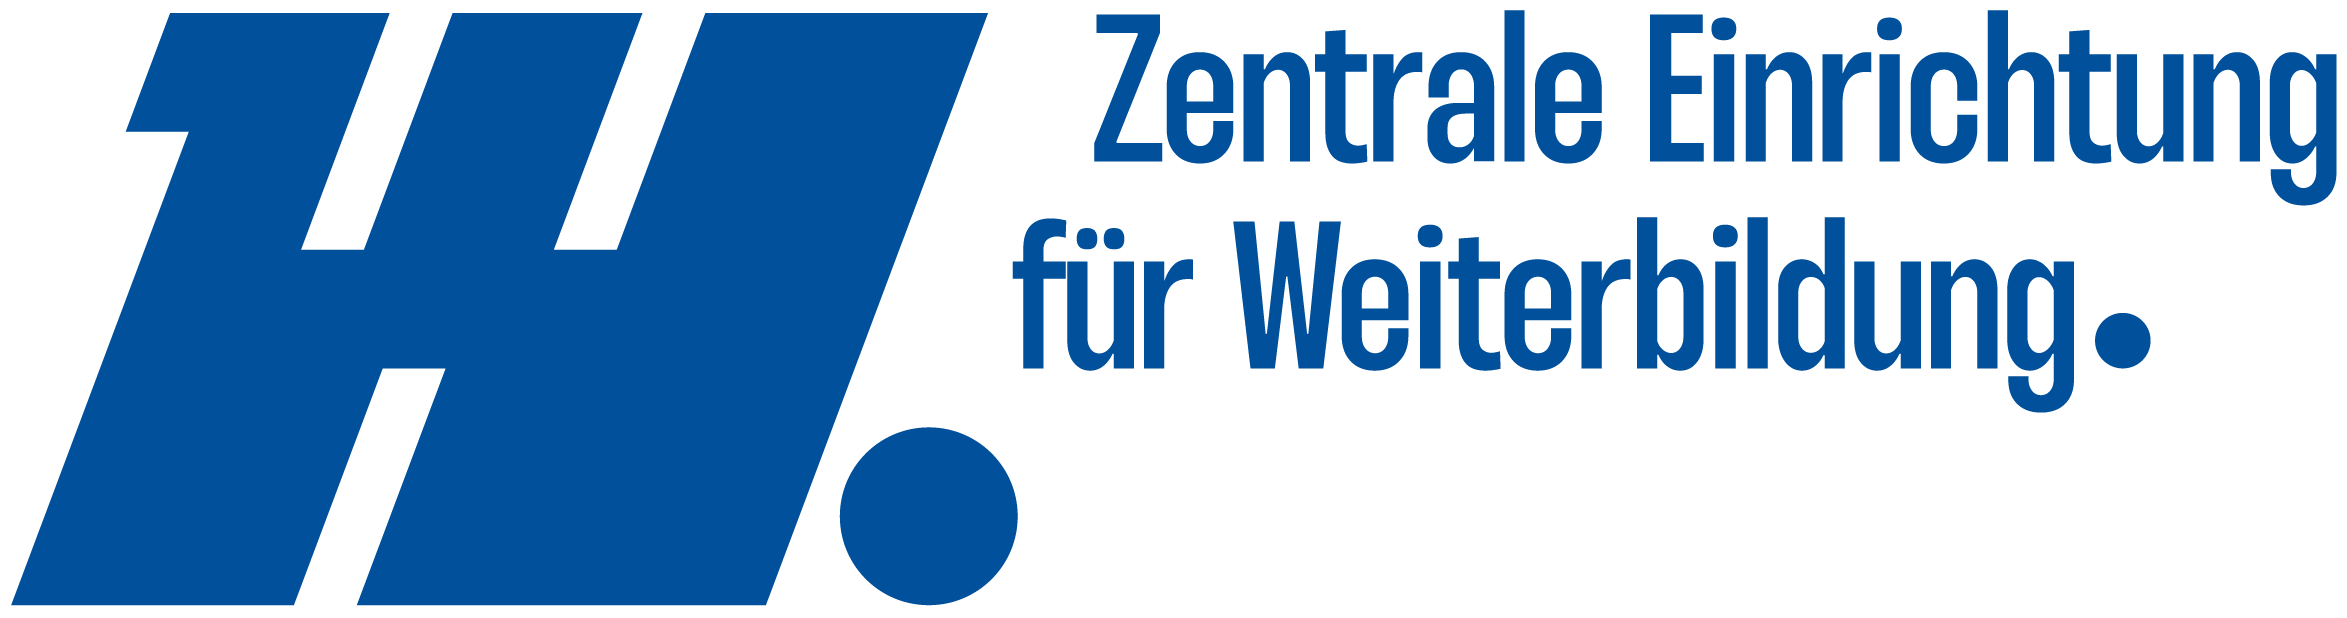 Logo Centre for Continuing Education